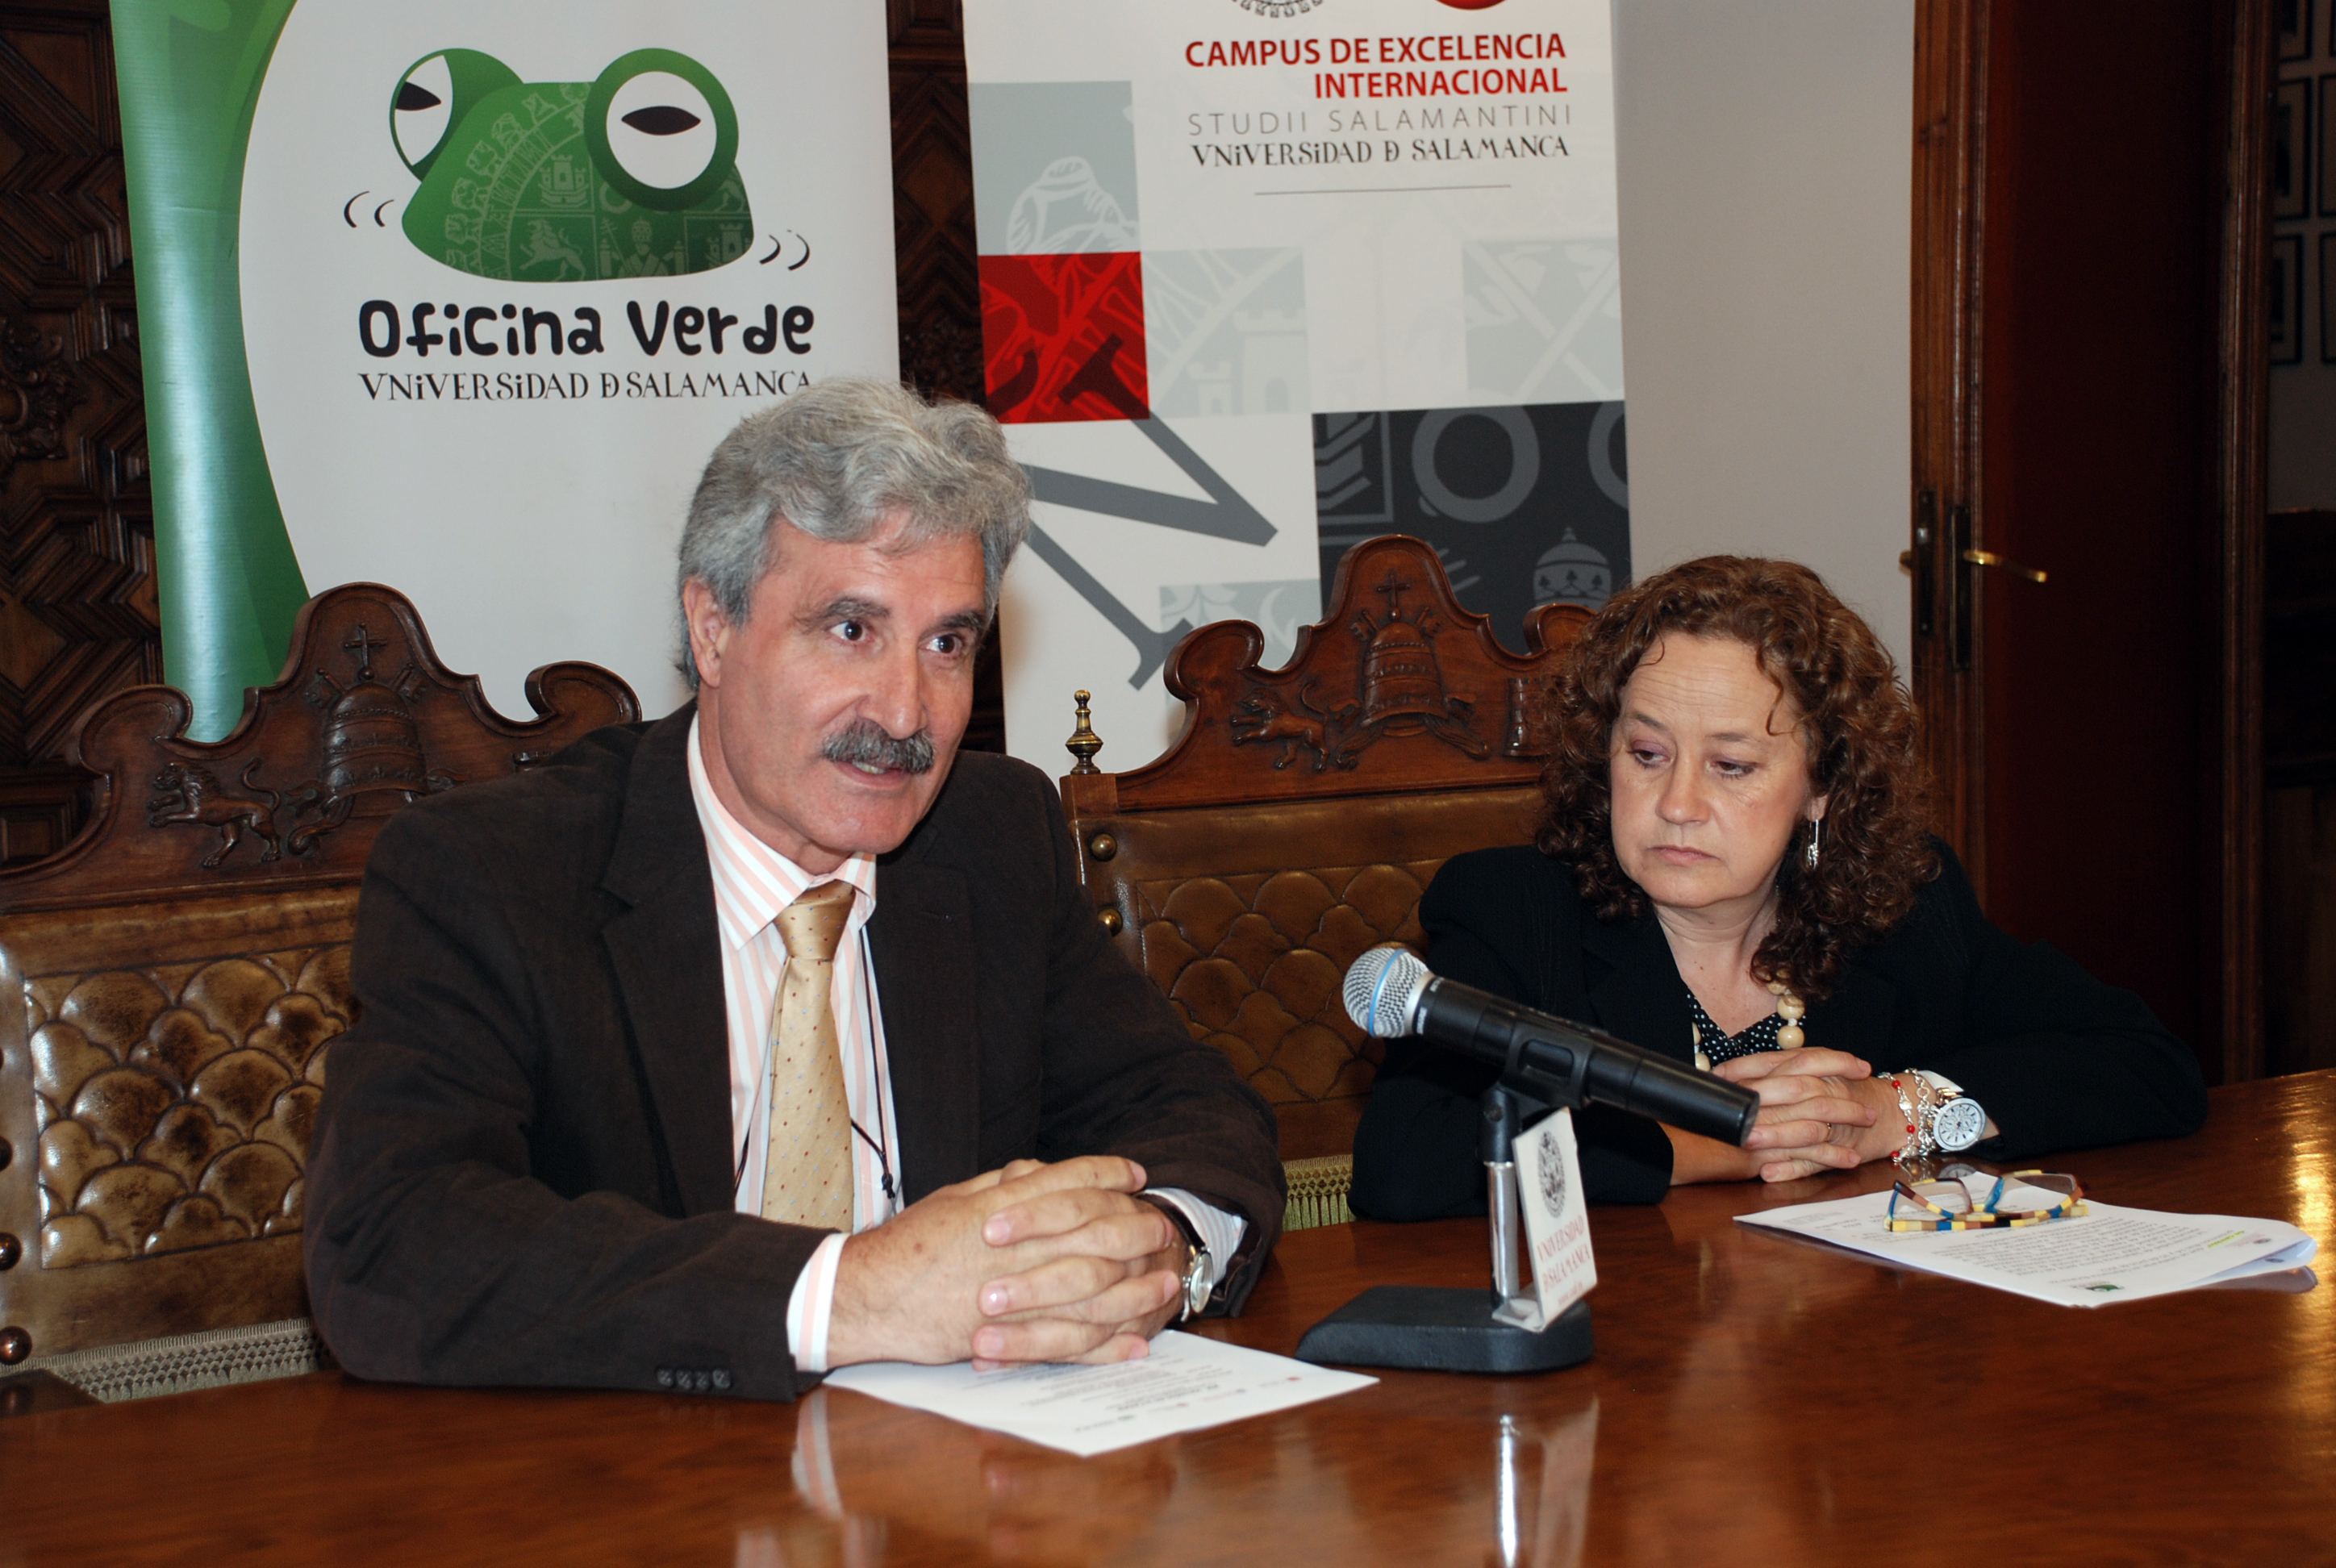 Presentación de la reunión de la comisión sectorial de calidad ambiental de la CRUE en la Universidad de Salamanca